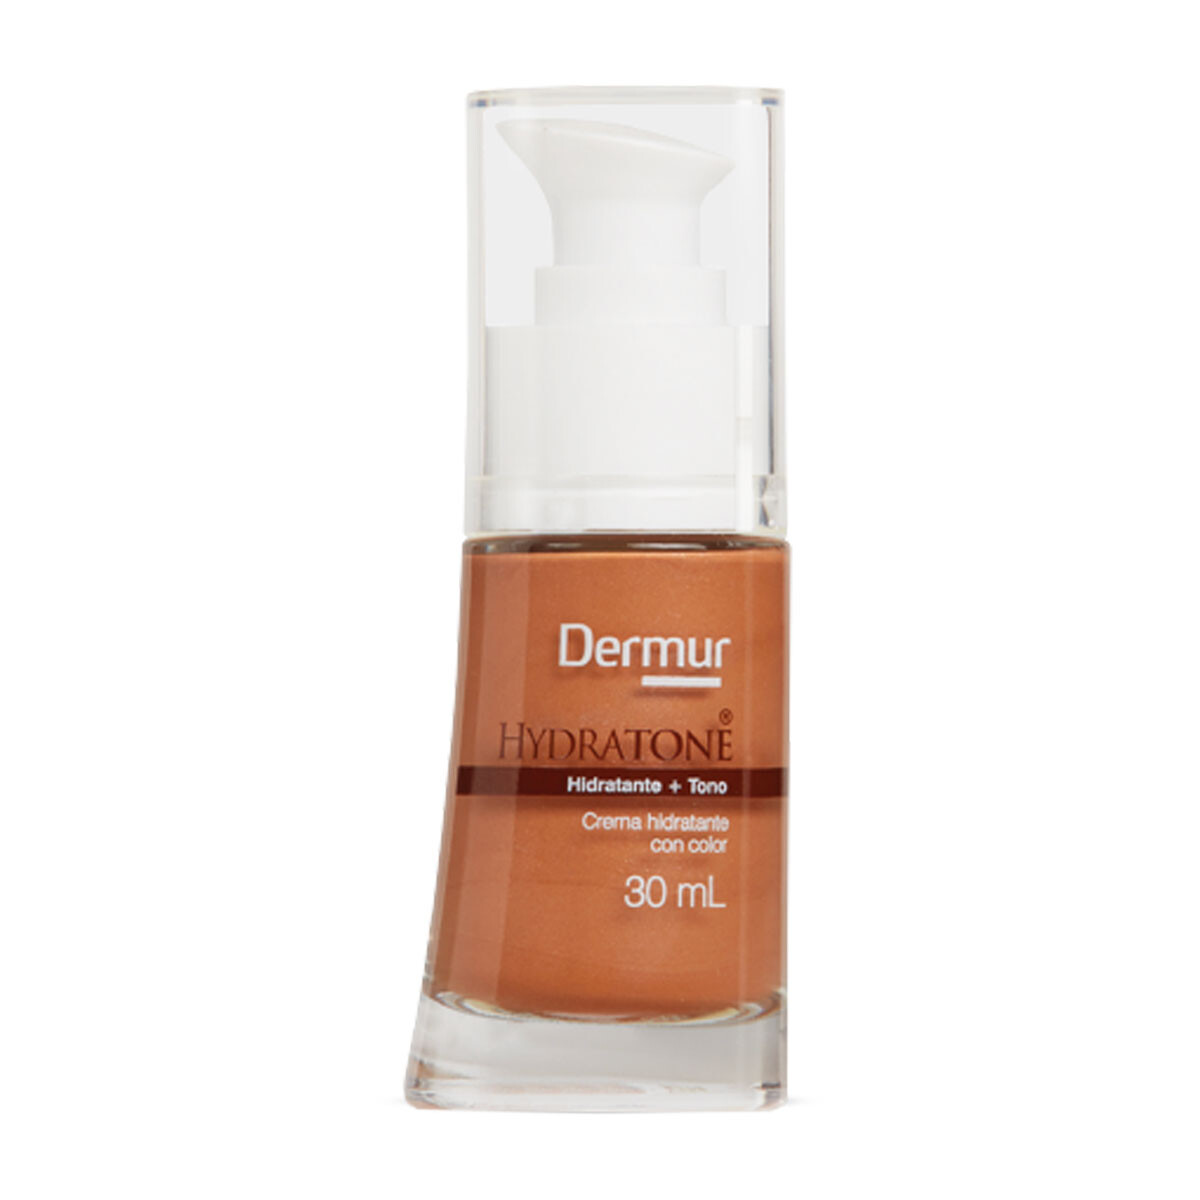 Dermur Hydratone Crema Hidratante con Color 30ml 